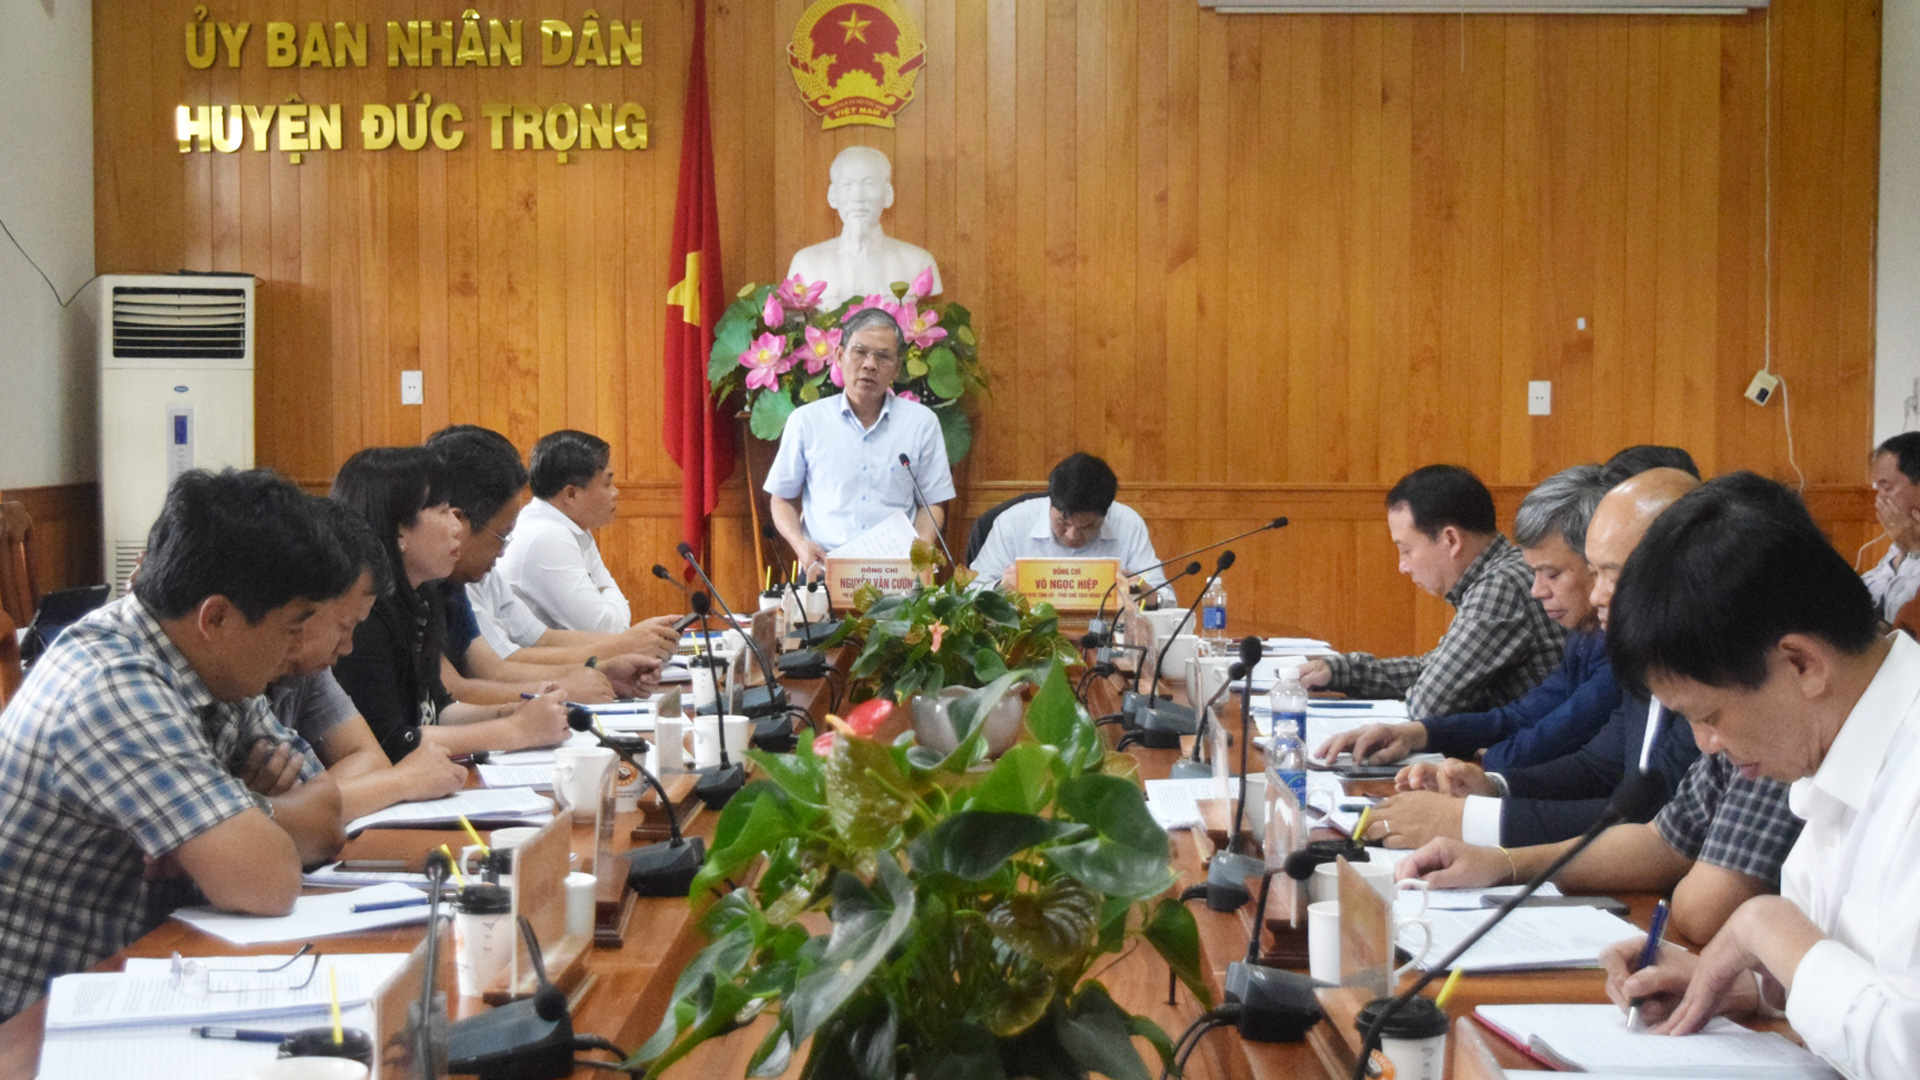 Đồng chí Nguyễn Văn Cường - Chủ tịch UBND huyện Đức Trọng phát biểu